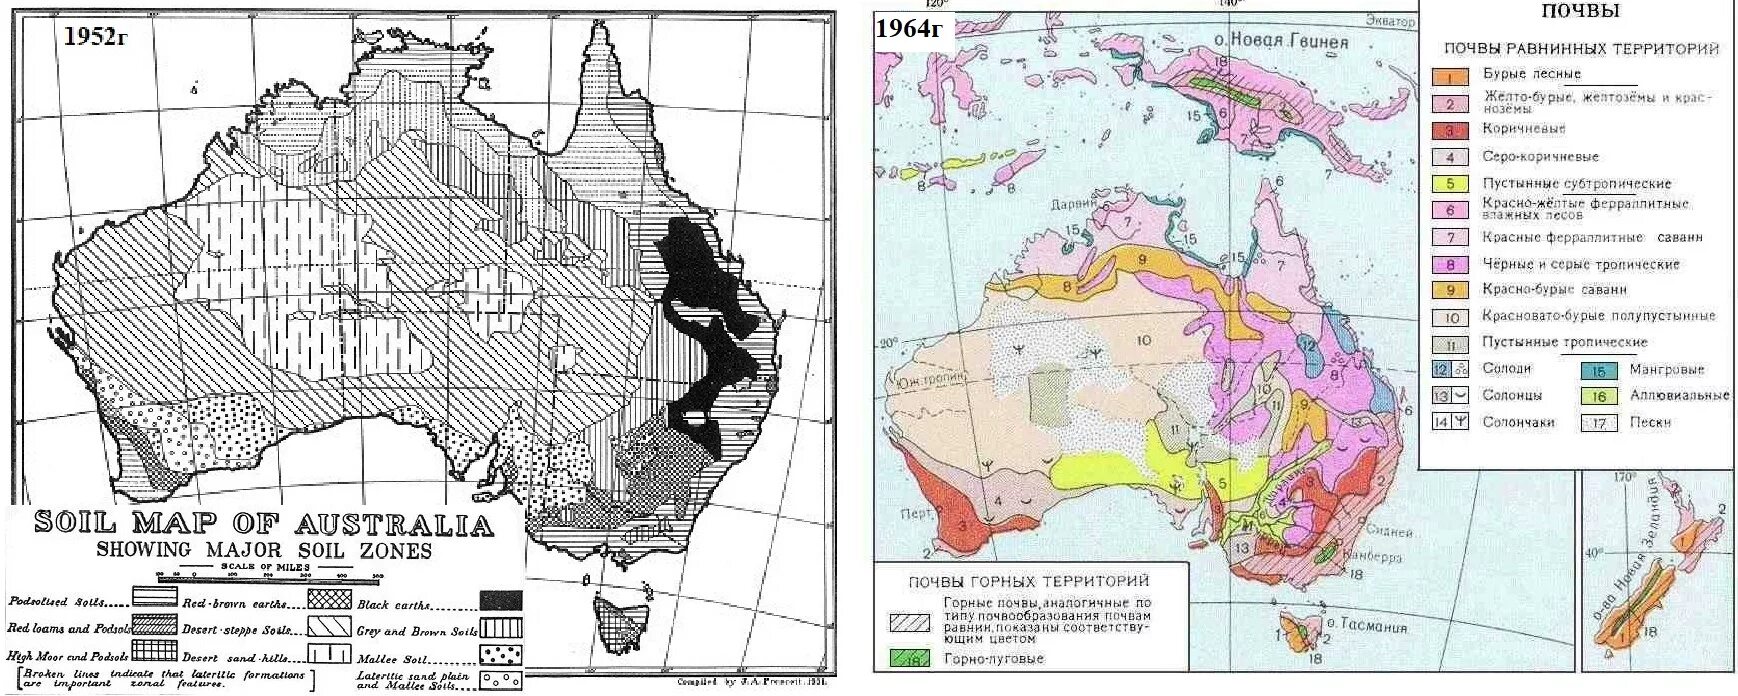 Природные ресурсы австралии и океании. Почвенная карта Австралии. Почвенные ресурсы Австралии карта. Карта почв Австралии. Карта типов почв Австралия и Океания.